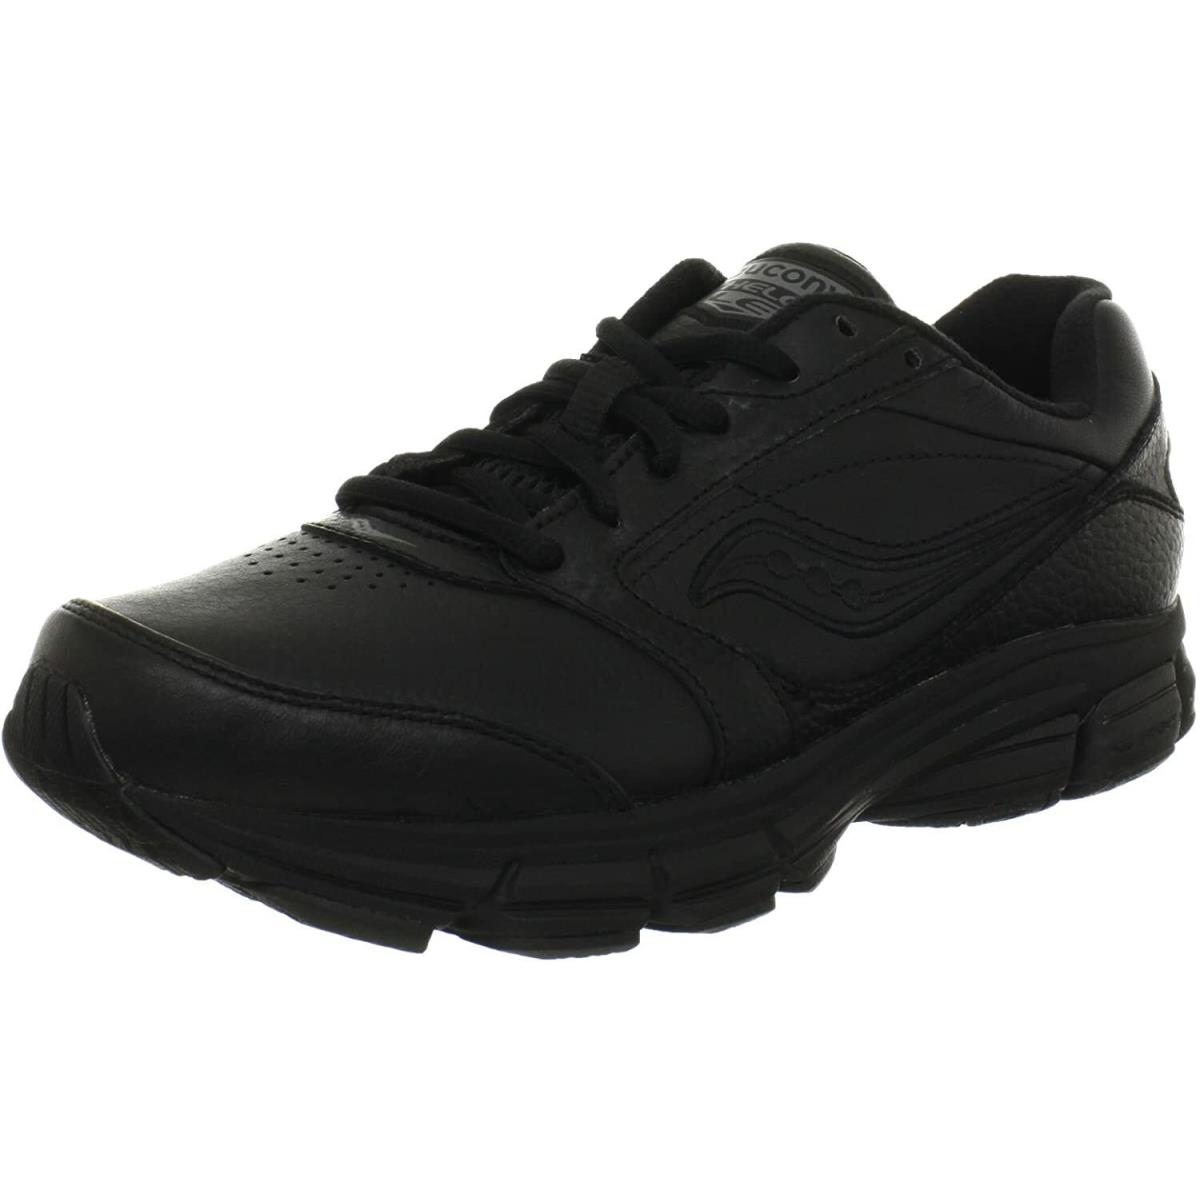 Saucony Women`s Echelon LE2 Walking Shoe Black 5 M US - Black